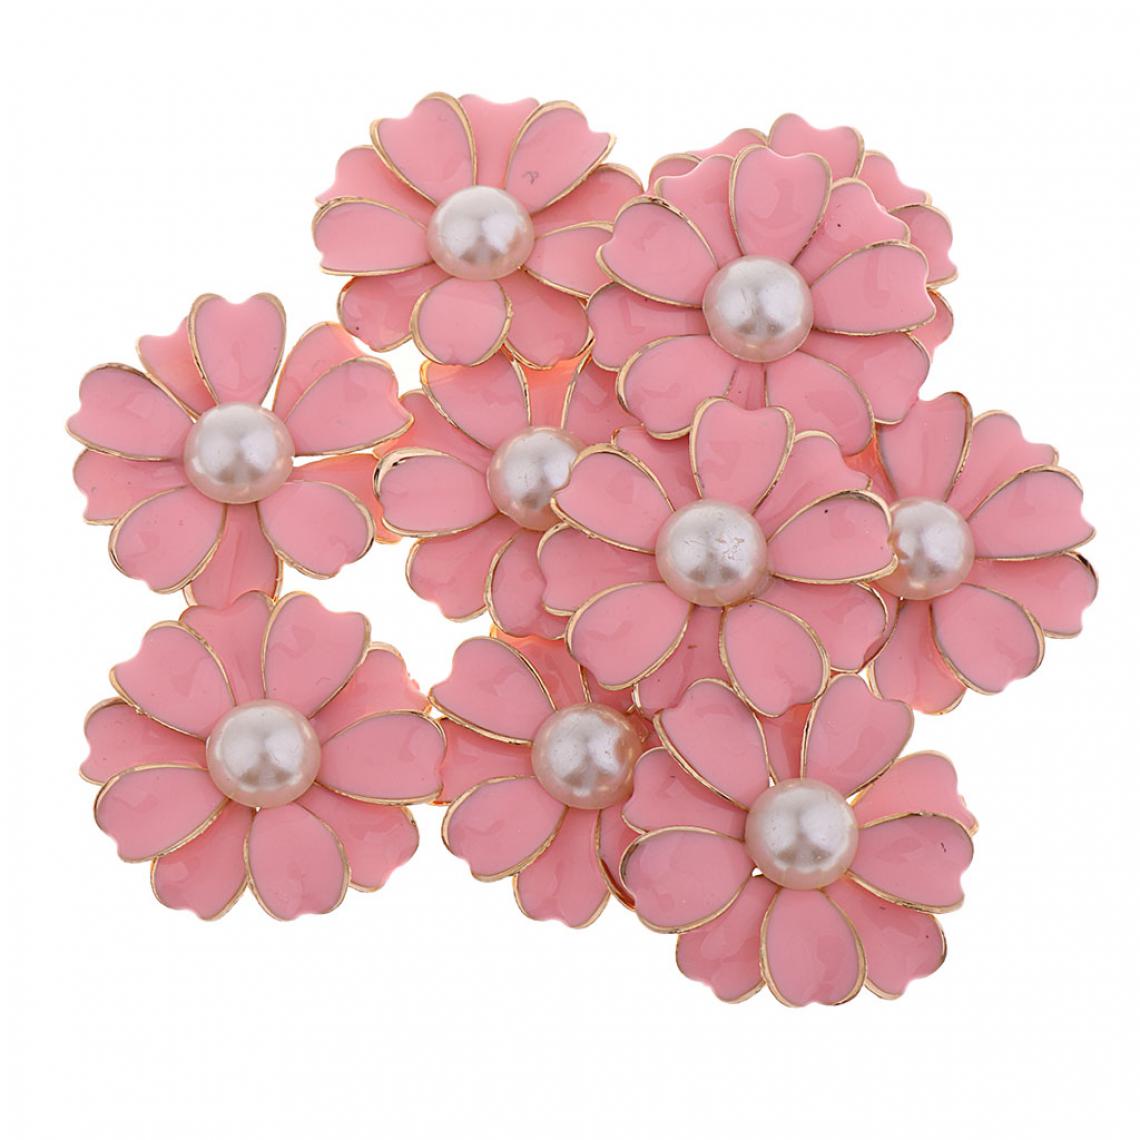 marque generique - 10pcs perle strass fleur bouton cristal flatback ornements decoration rose + perle - Poignée de meuble